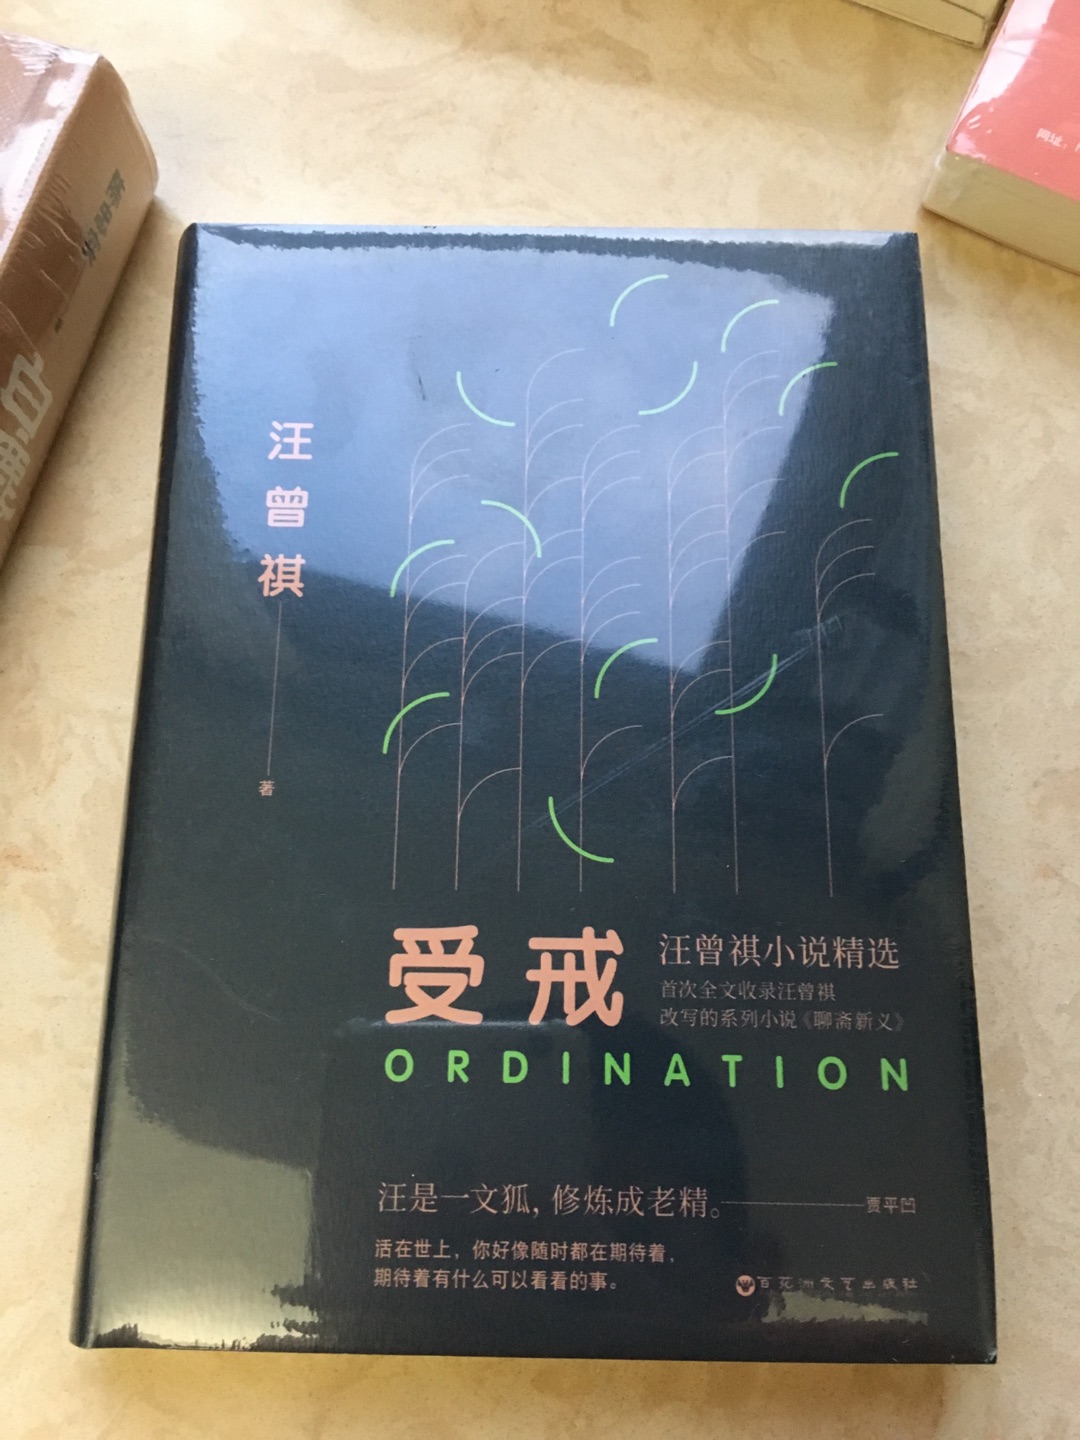 很喜欢汪曾祺先生的作品，所以买了这本书，定价偏贵吧。